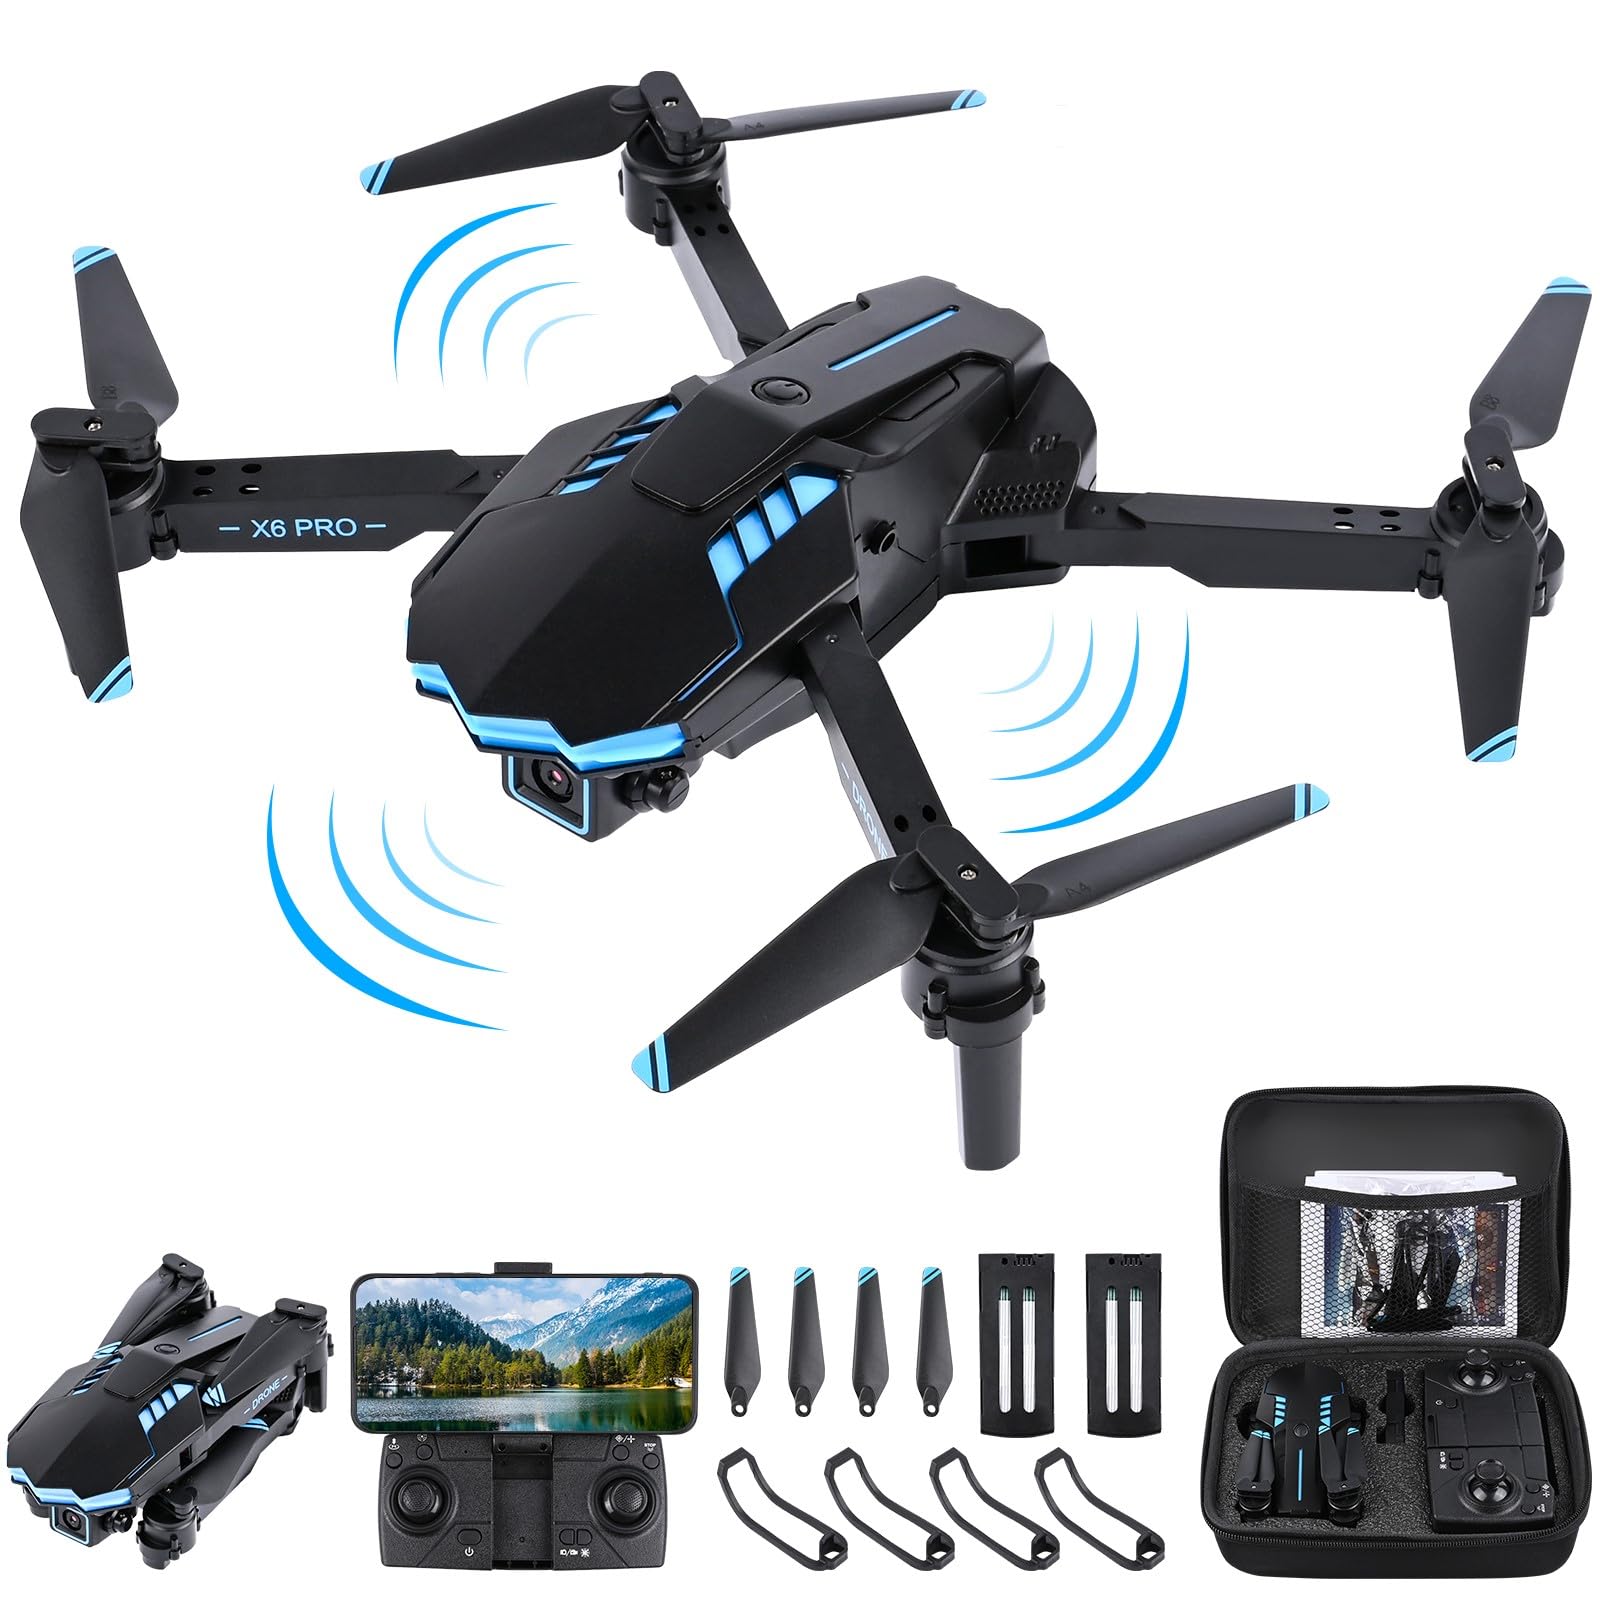 Weinsamkeit Drohne mit Kamera 1080P HD für Kinder, WiFi FPV Drone für Anfänger, RC Quadcopter mit 2 Akku, Schwerkraft Sensor, 3D Flip Mode, Ein-Tasten-Start/Landung, Höhenhaltemodus, Headless Mode